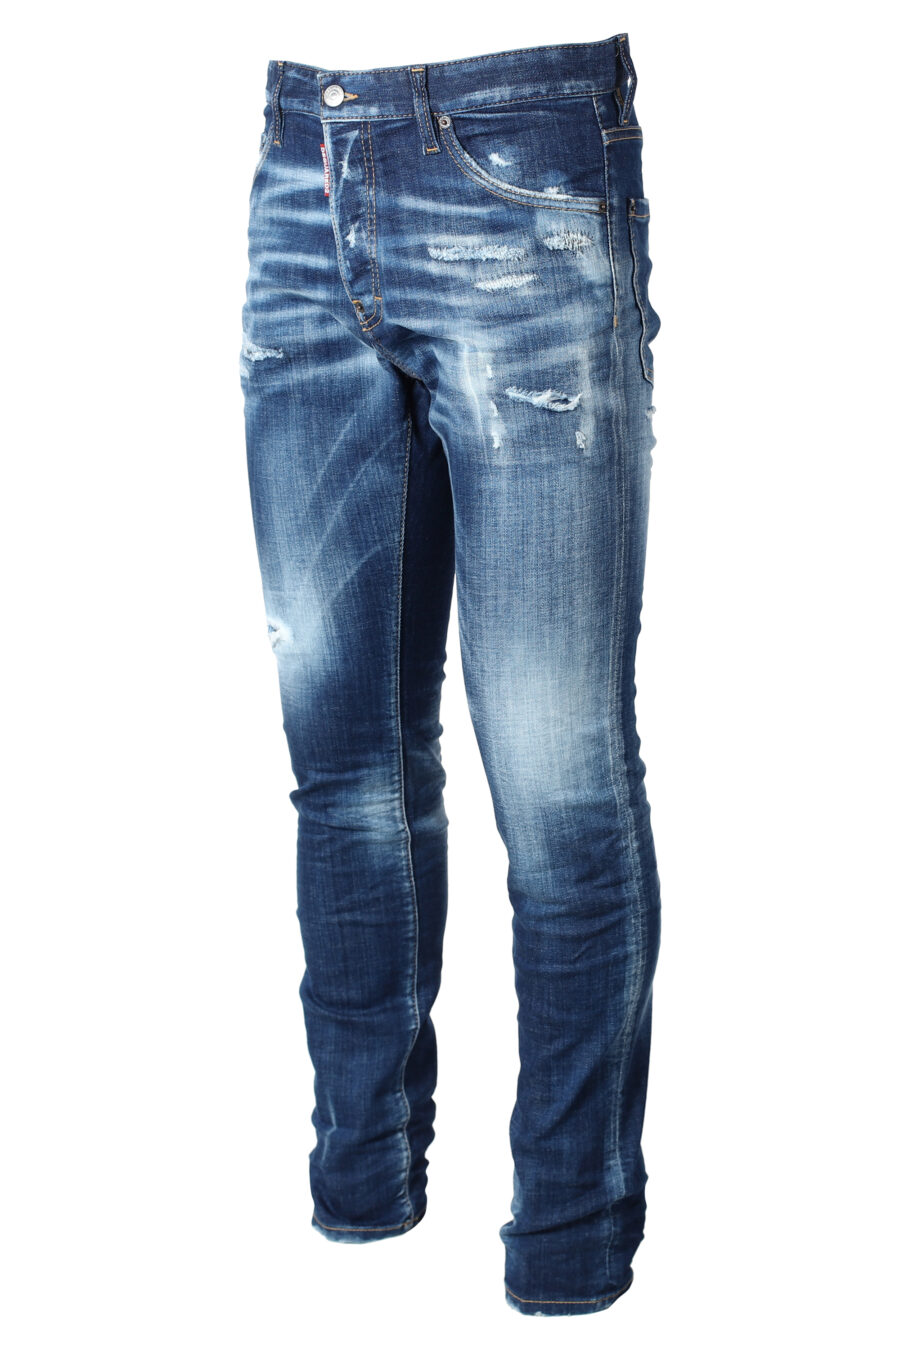 Jeans bleus portés "cool guy jean" - IMG 9873